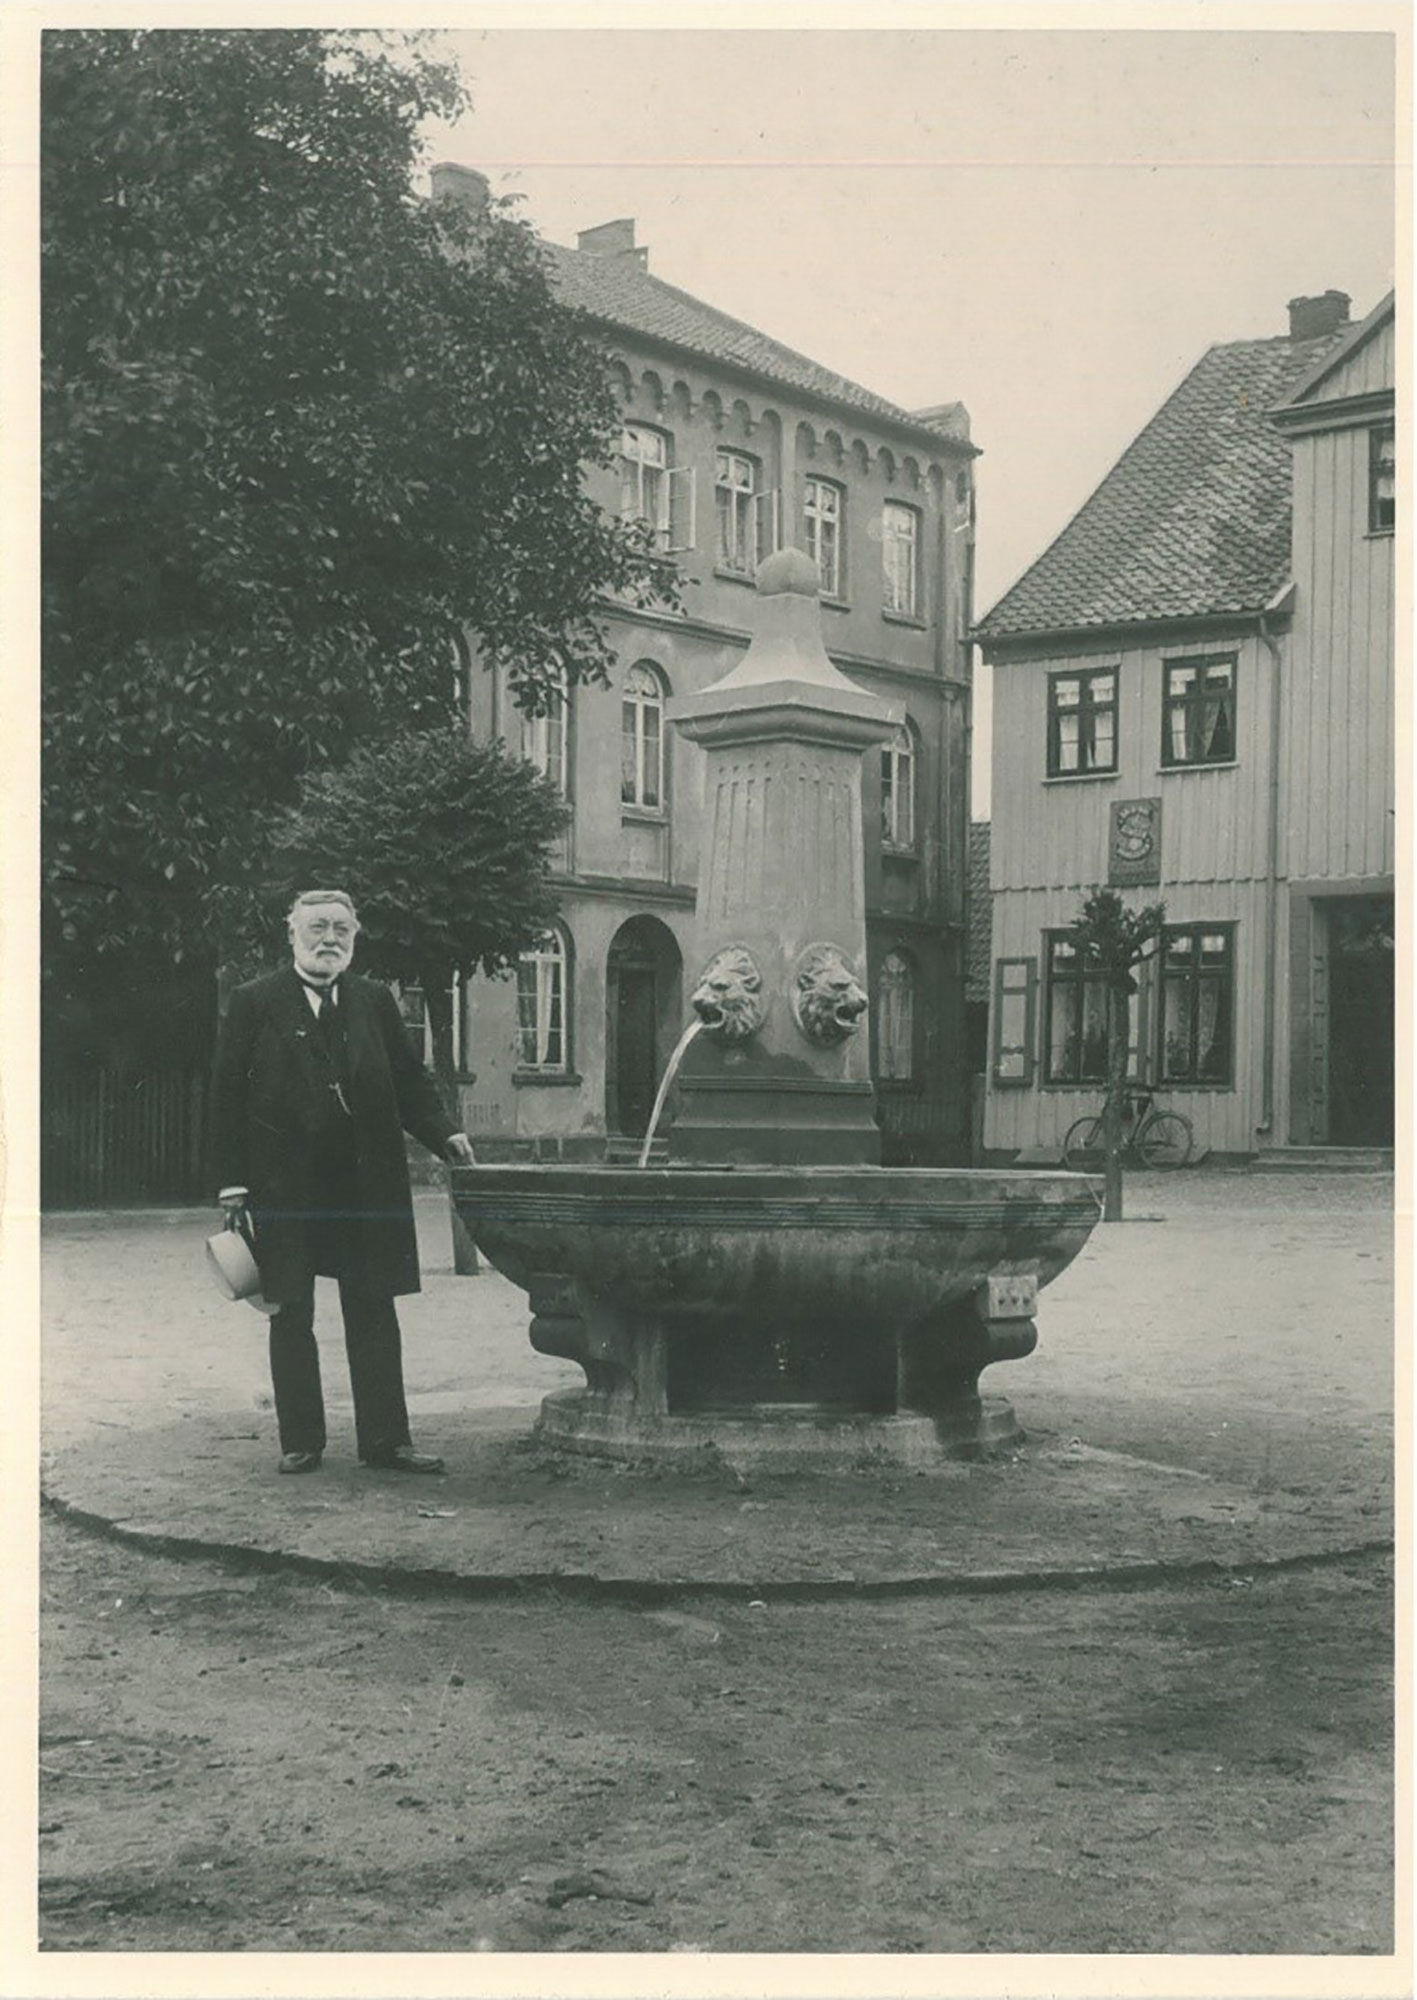 (c) Stadtarchiv Gifhorn, Bilderserie Gifhorn gestern und heute,F-01 - Senator Hermann Schulze neben dem nach ihm benannten Brunnen, 1904